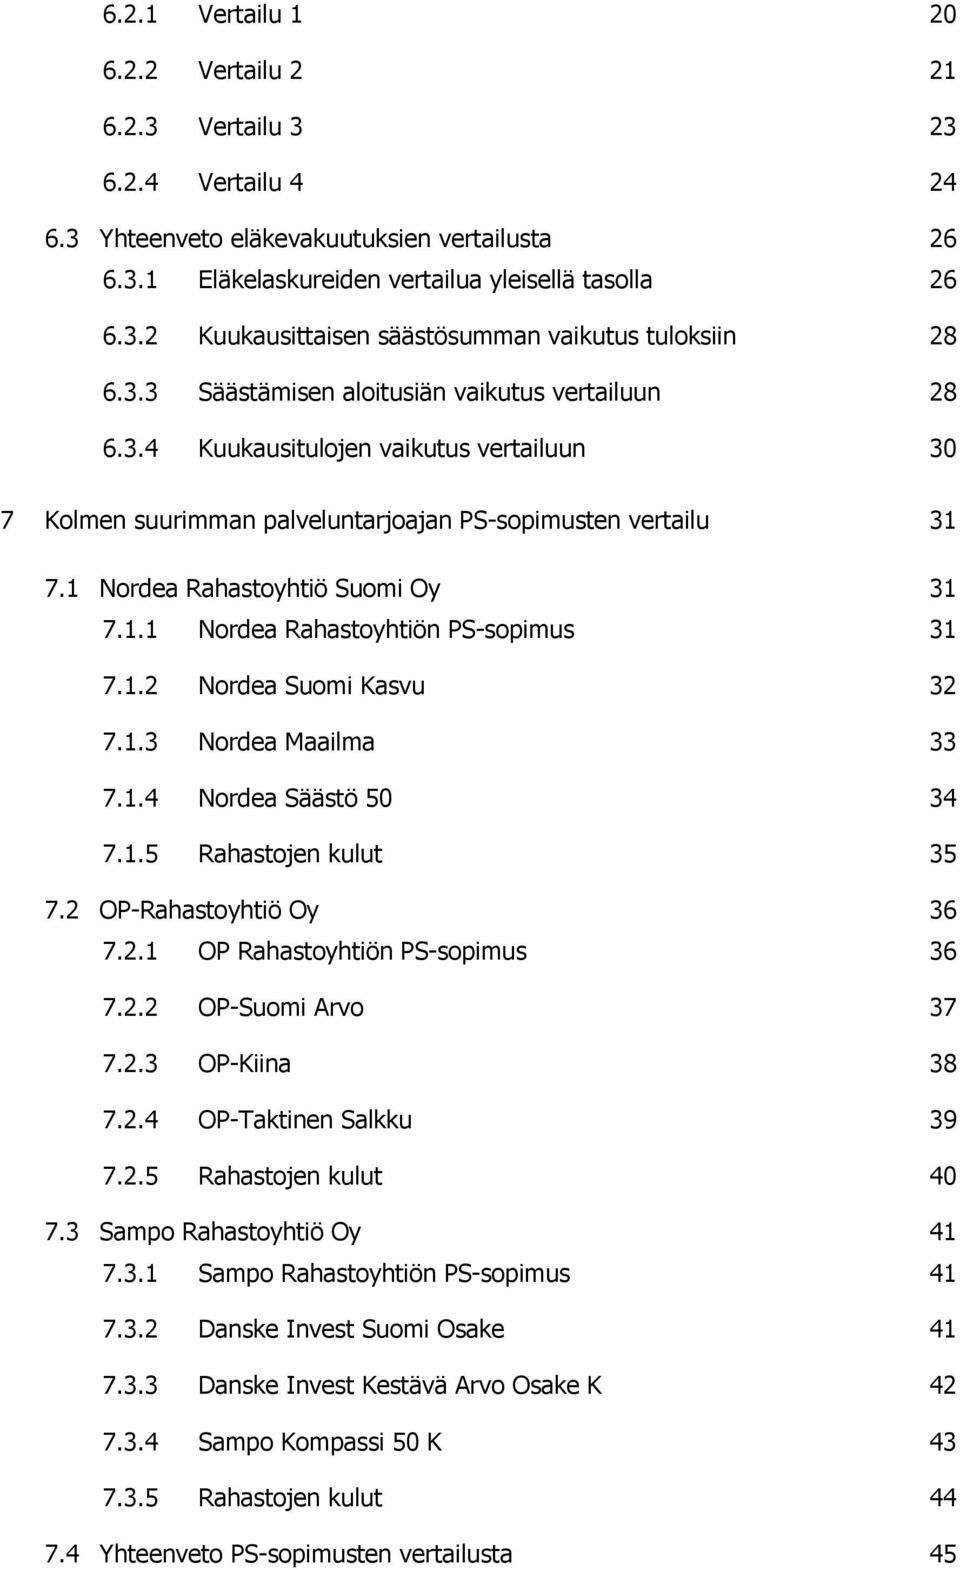 1.2 Nordea Suomi Kasvu 32 7.1.3 Nordea Maailma 33 7.1.4 Nordea Säästö 50 34 7.1.5 Rahastojen kulut 35 7.2 OP-Rahastoyhtiö Oy 36 7.2.1 OP Rahastoyhtiön PS-sopimus 36 7.2.2 OP-Suomi Arvo 37 7.2.3 OP-Kiina 38 7.